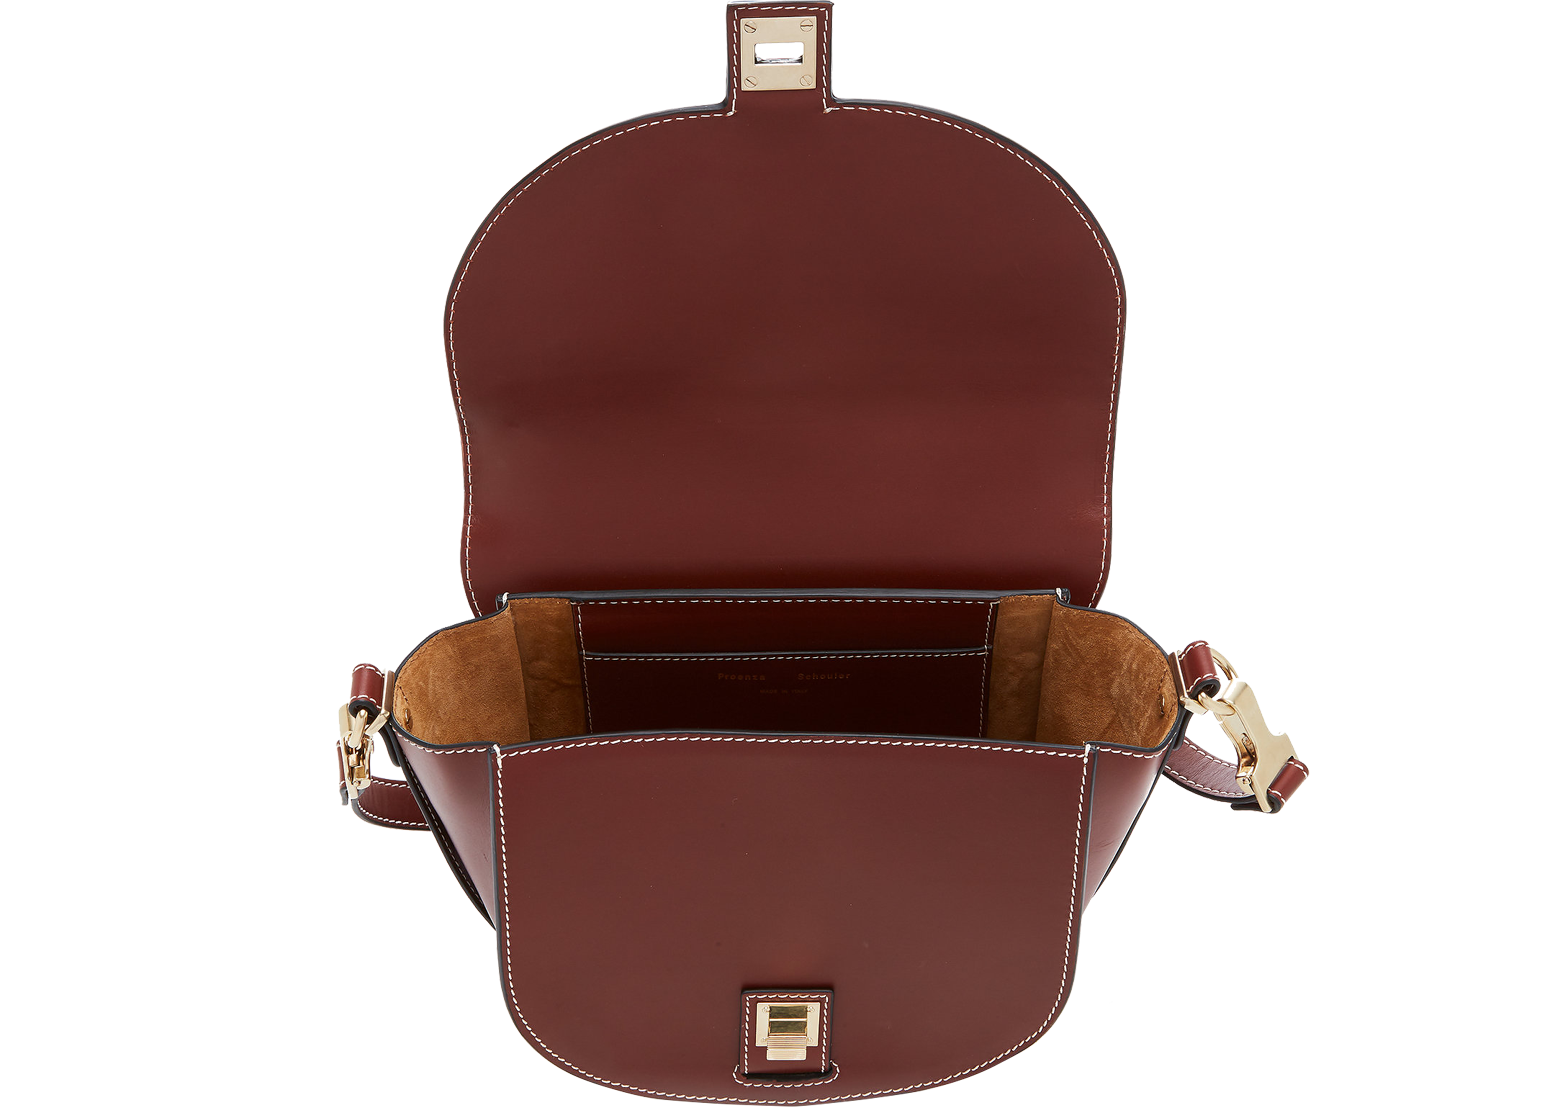 Proenza Schouler PS11 Medium Russet Leather Saddle Bag at FORZIERI